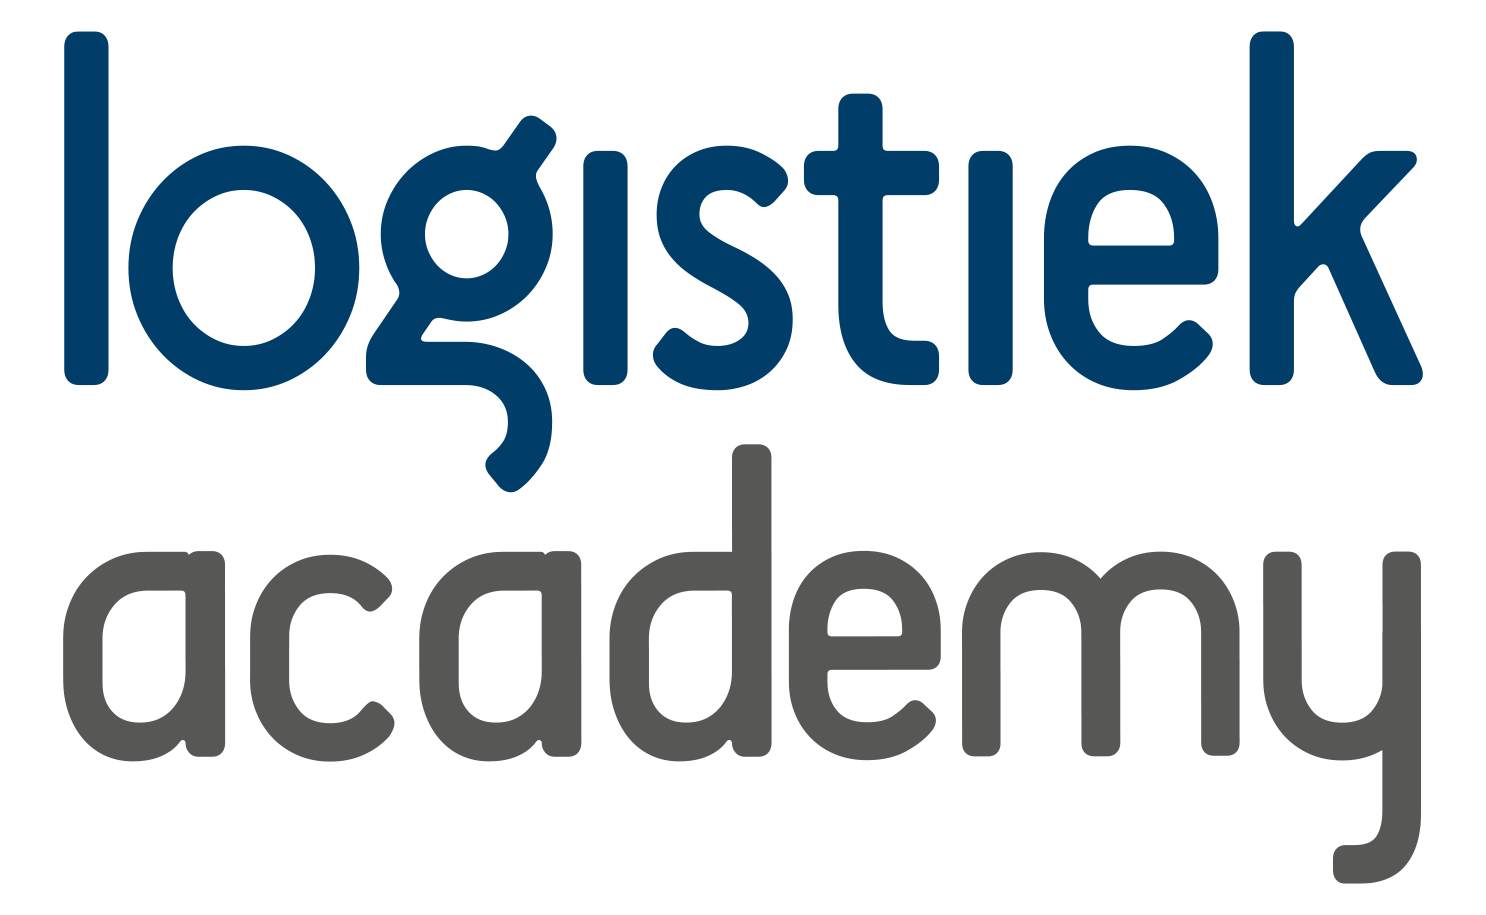 Logistiek Academy